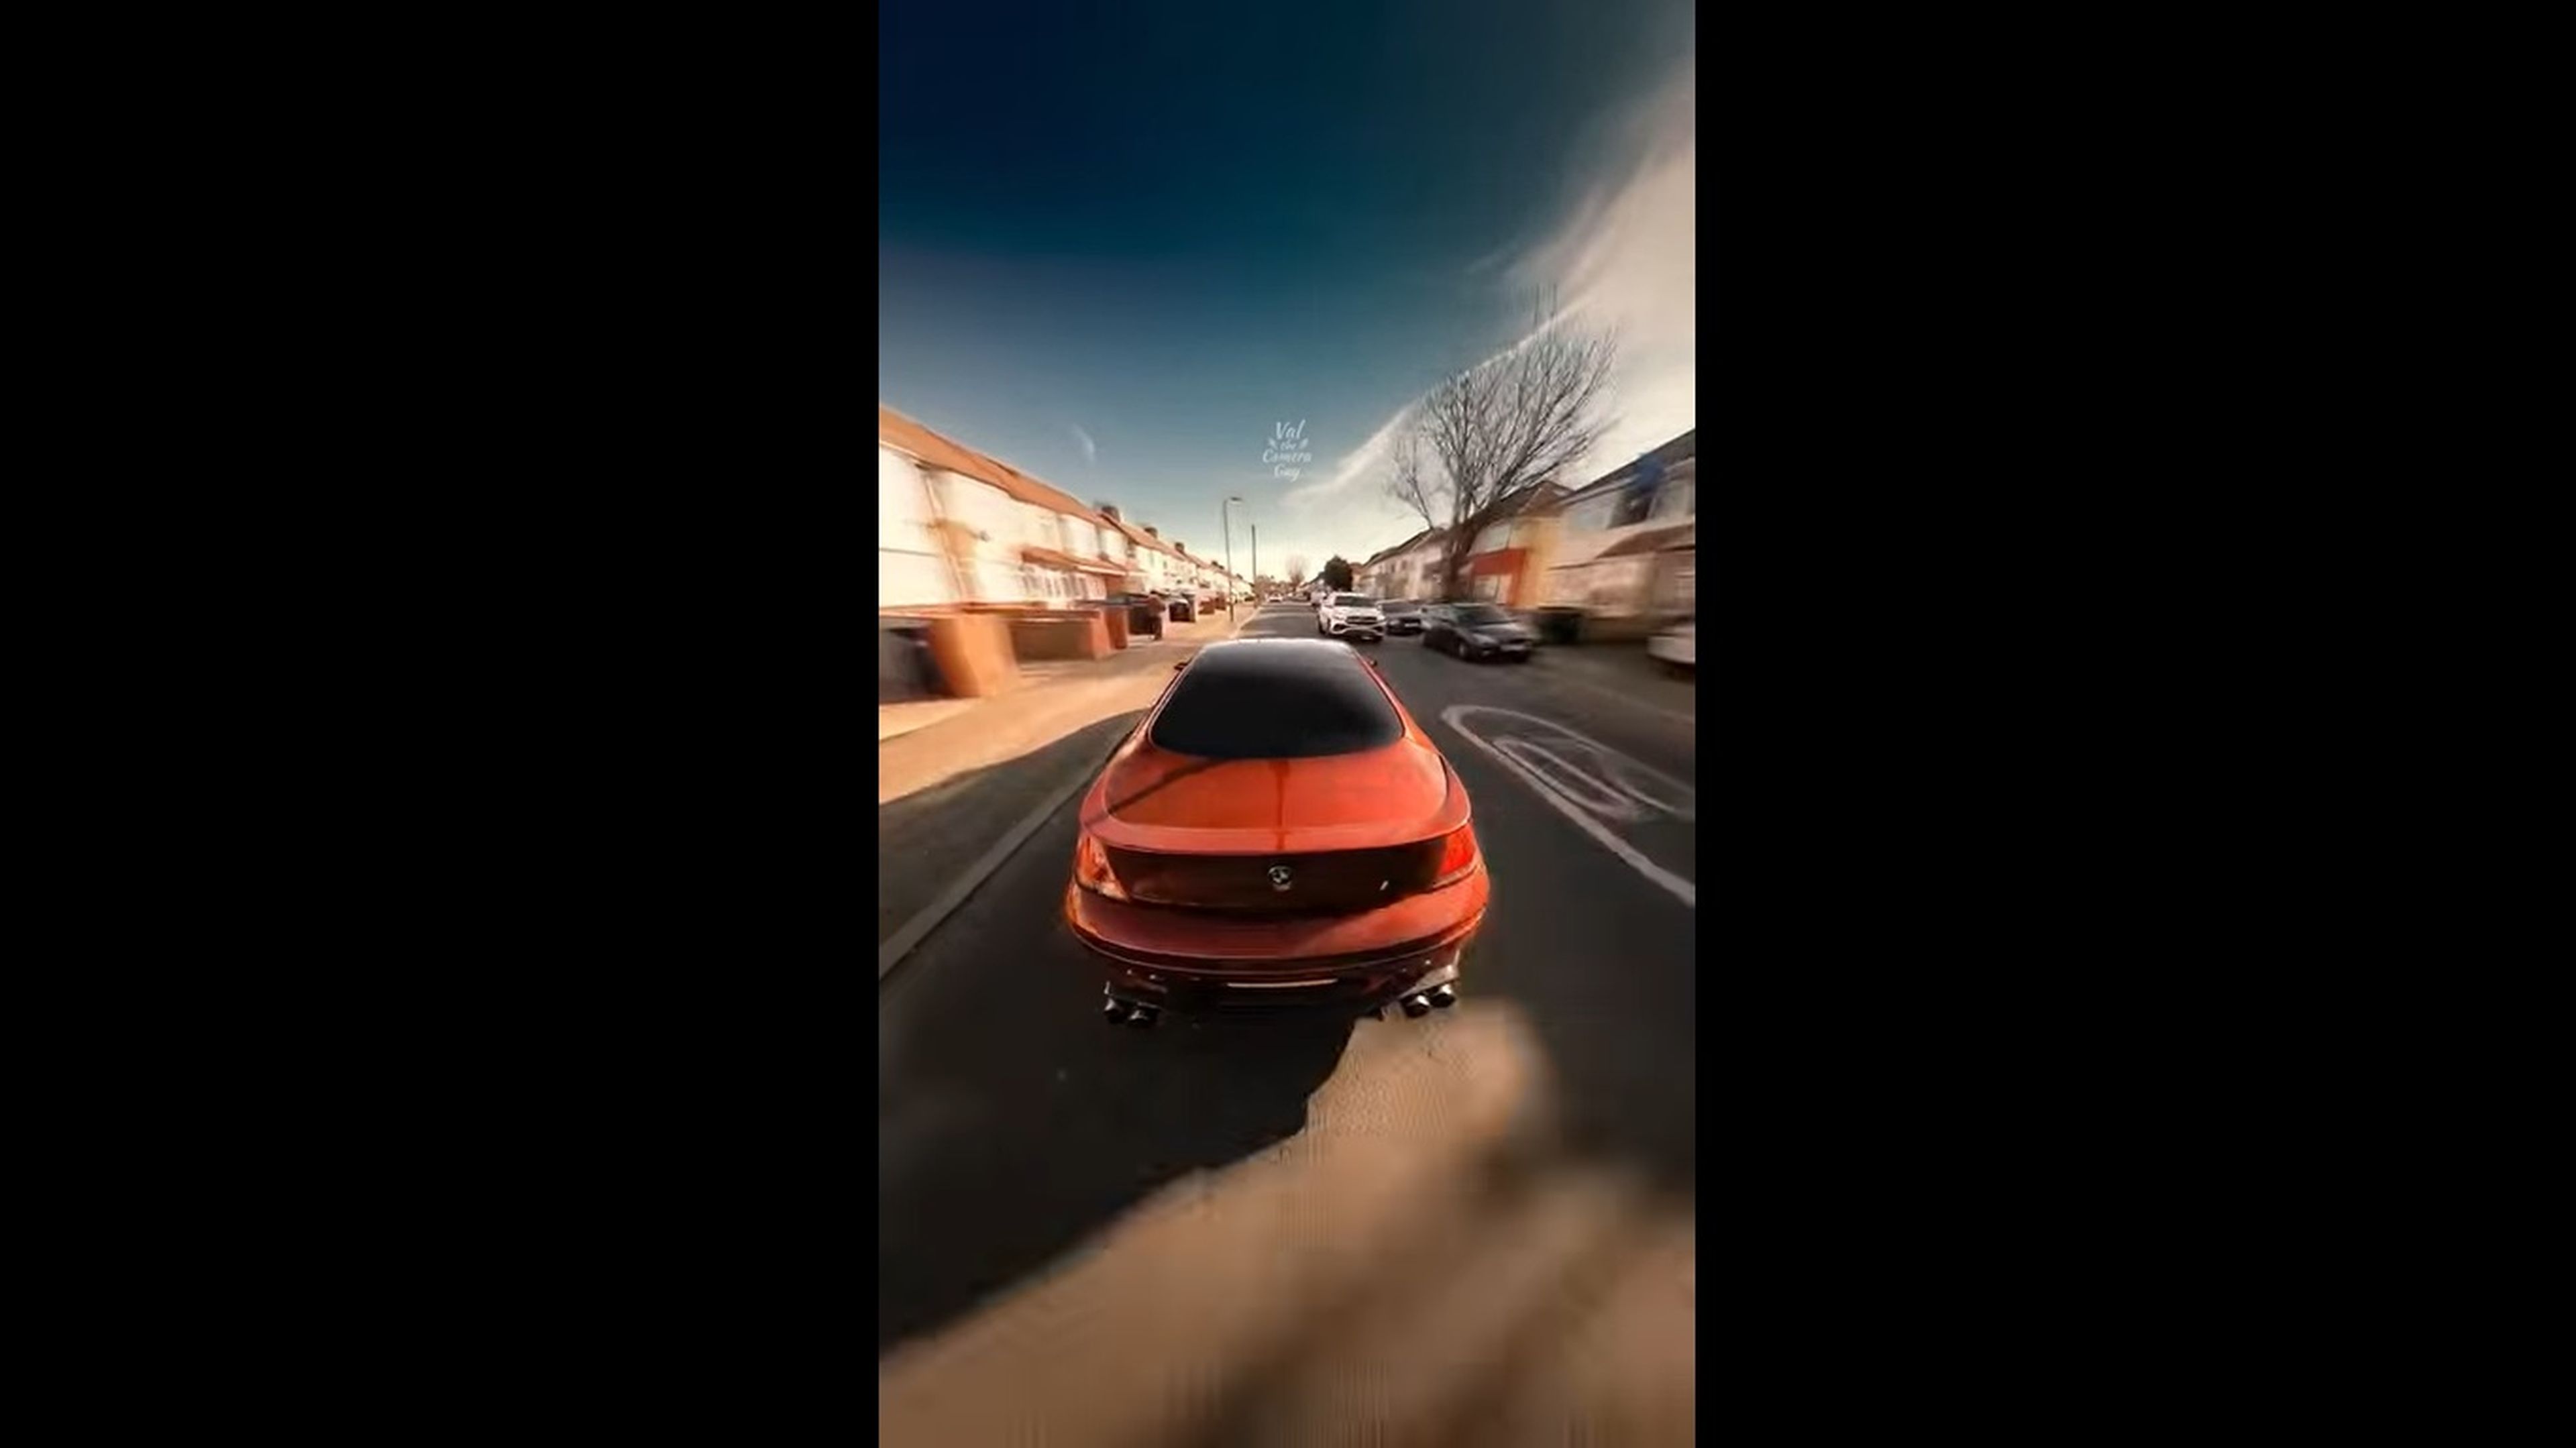 VÍDEO: Forza Horizon en la vida real, ¡sube el volumen!